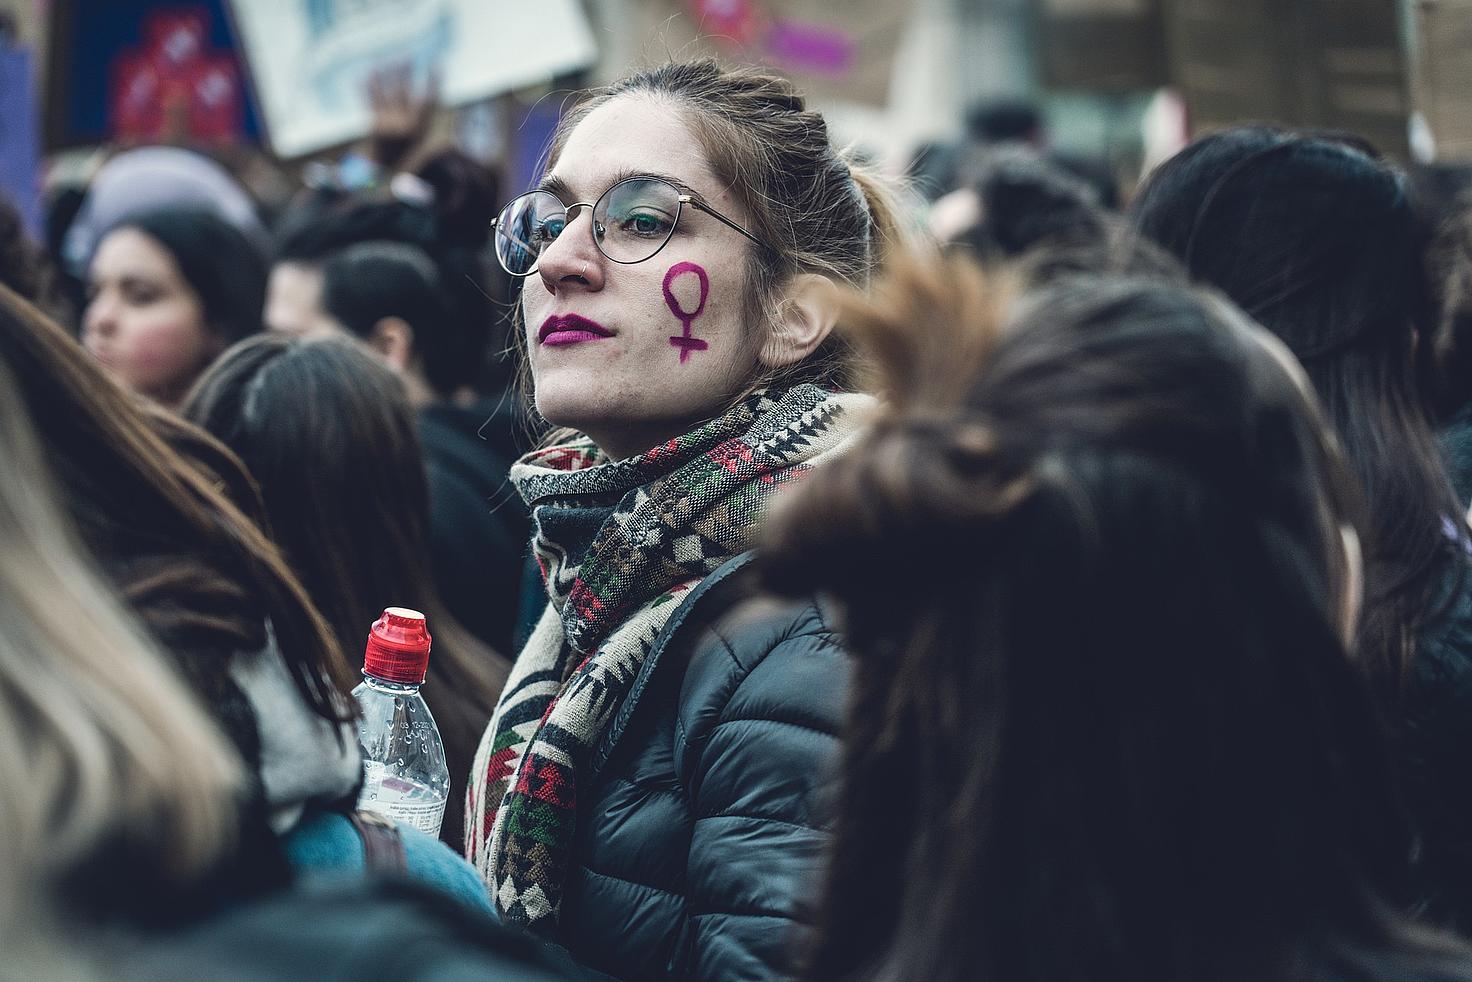 Emakume bat manifestazio feminista batean. ©Antonio Cansino/Pixabay